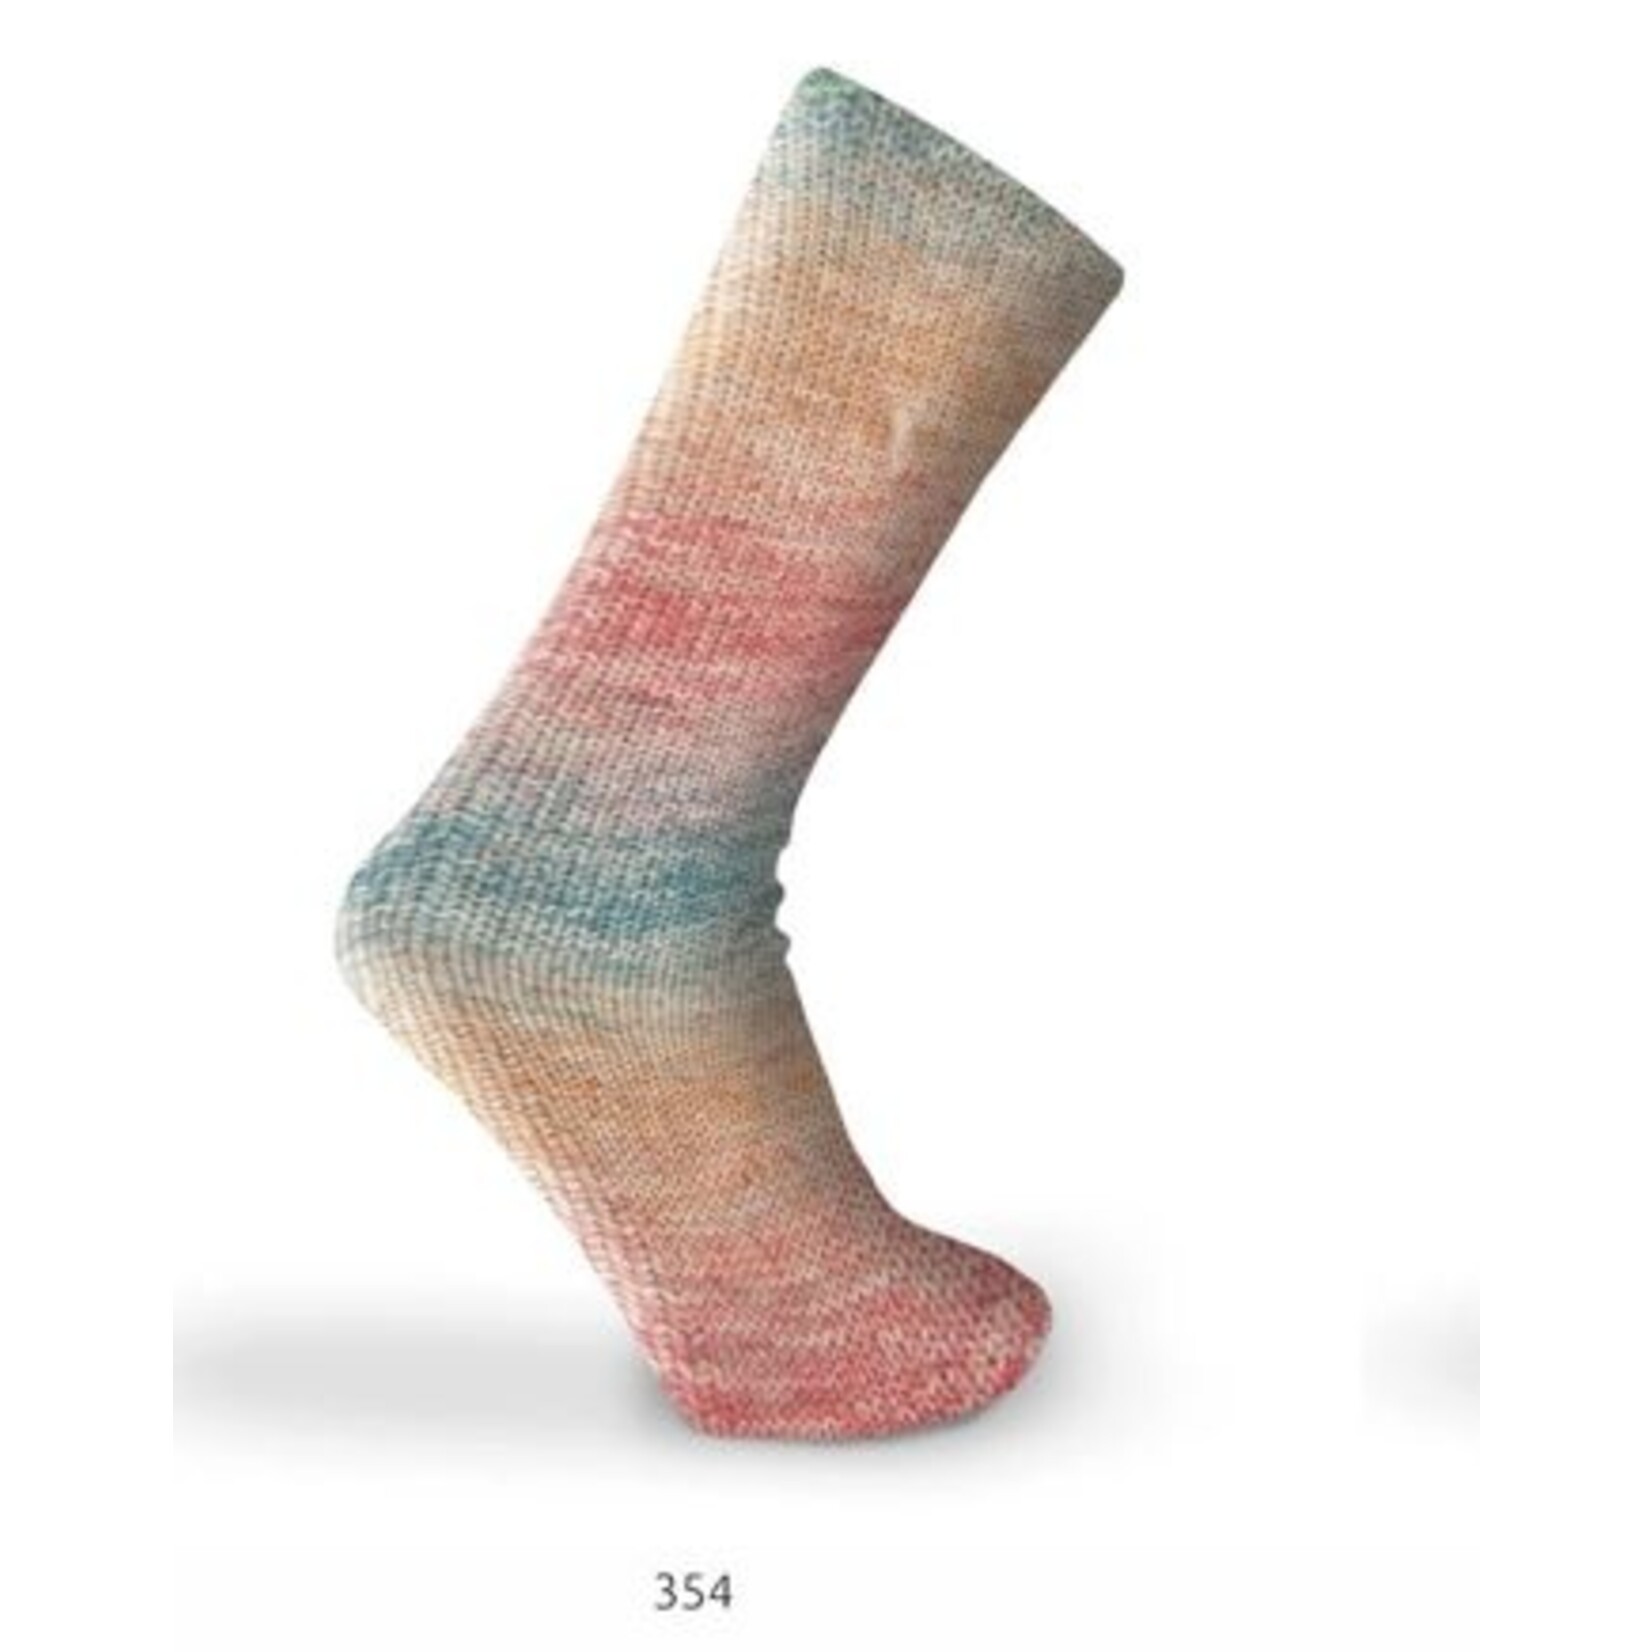 Katia Kaisla Socks 354 Oranje-Rood-Groenblauw